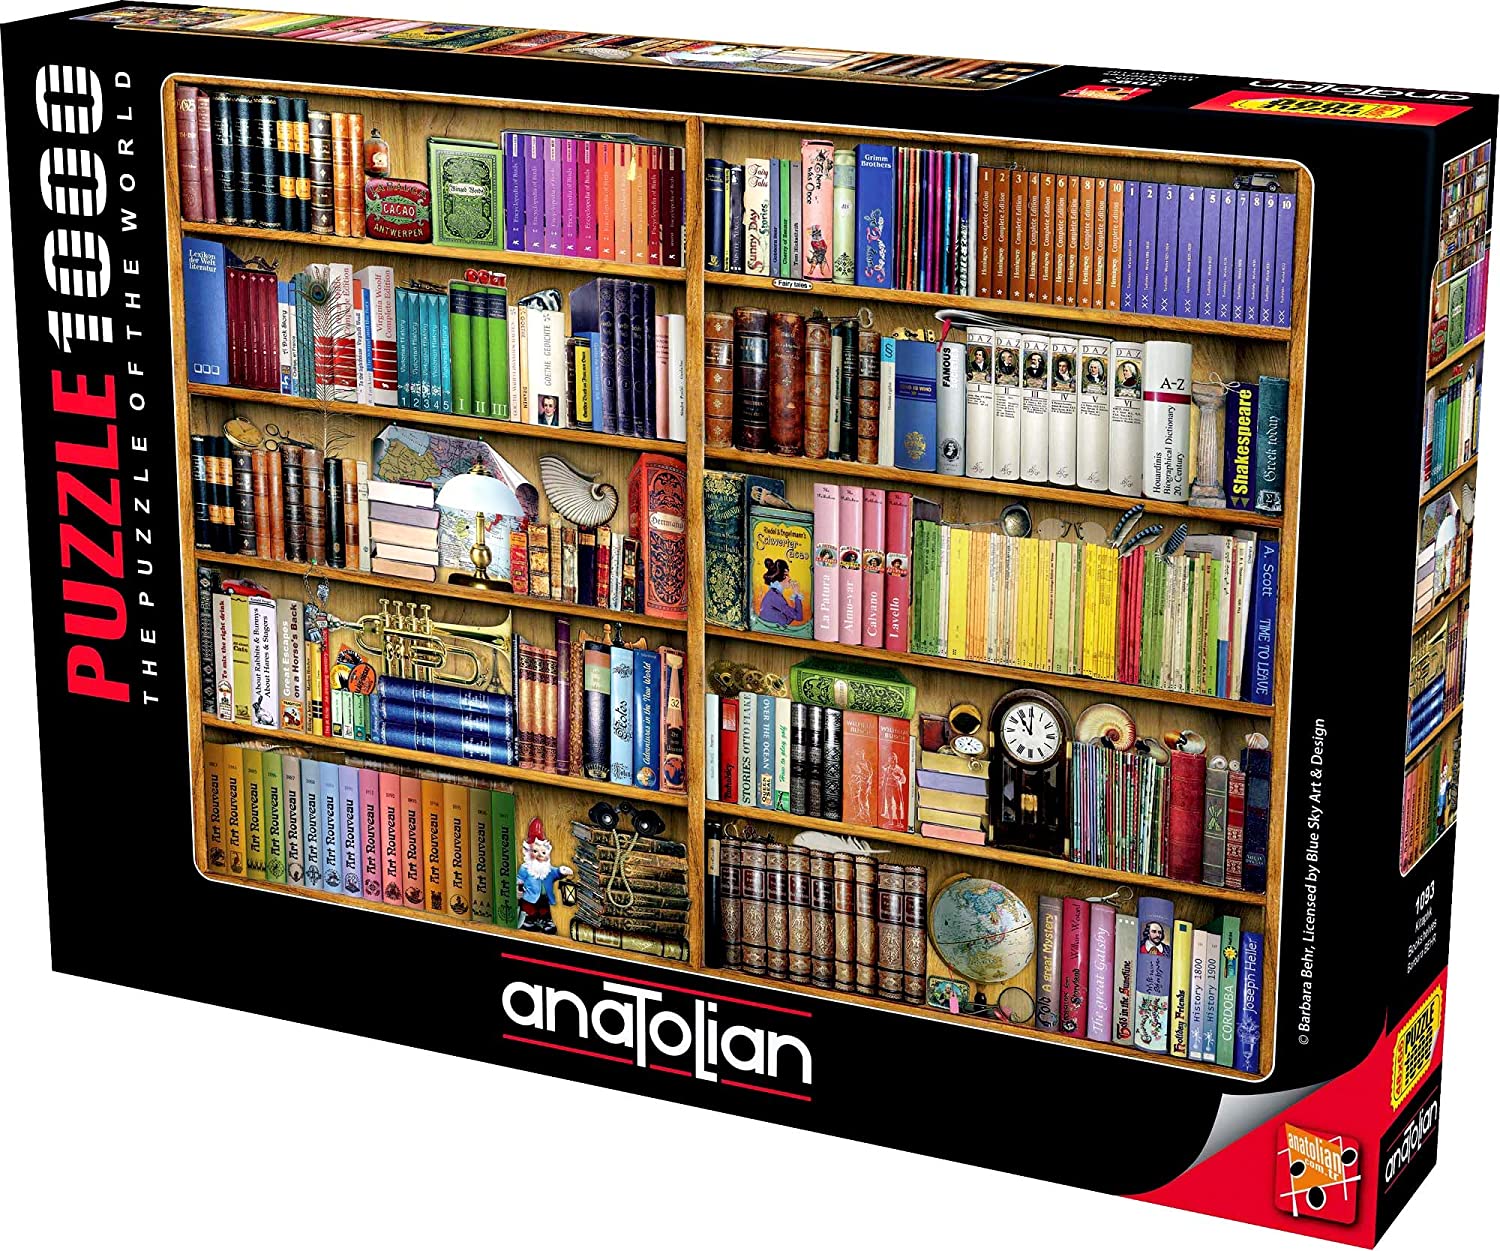  Bookshelves  1000 Piece Jigsaw Puzzle  Puzzle  Palace Aust